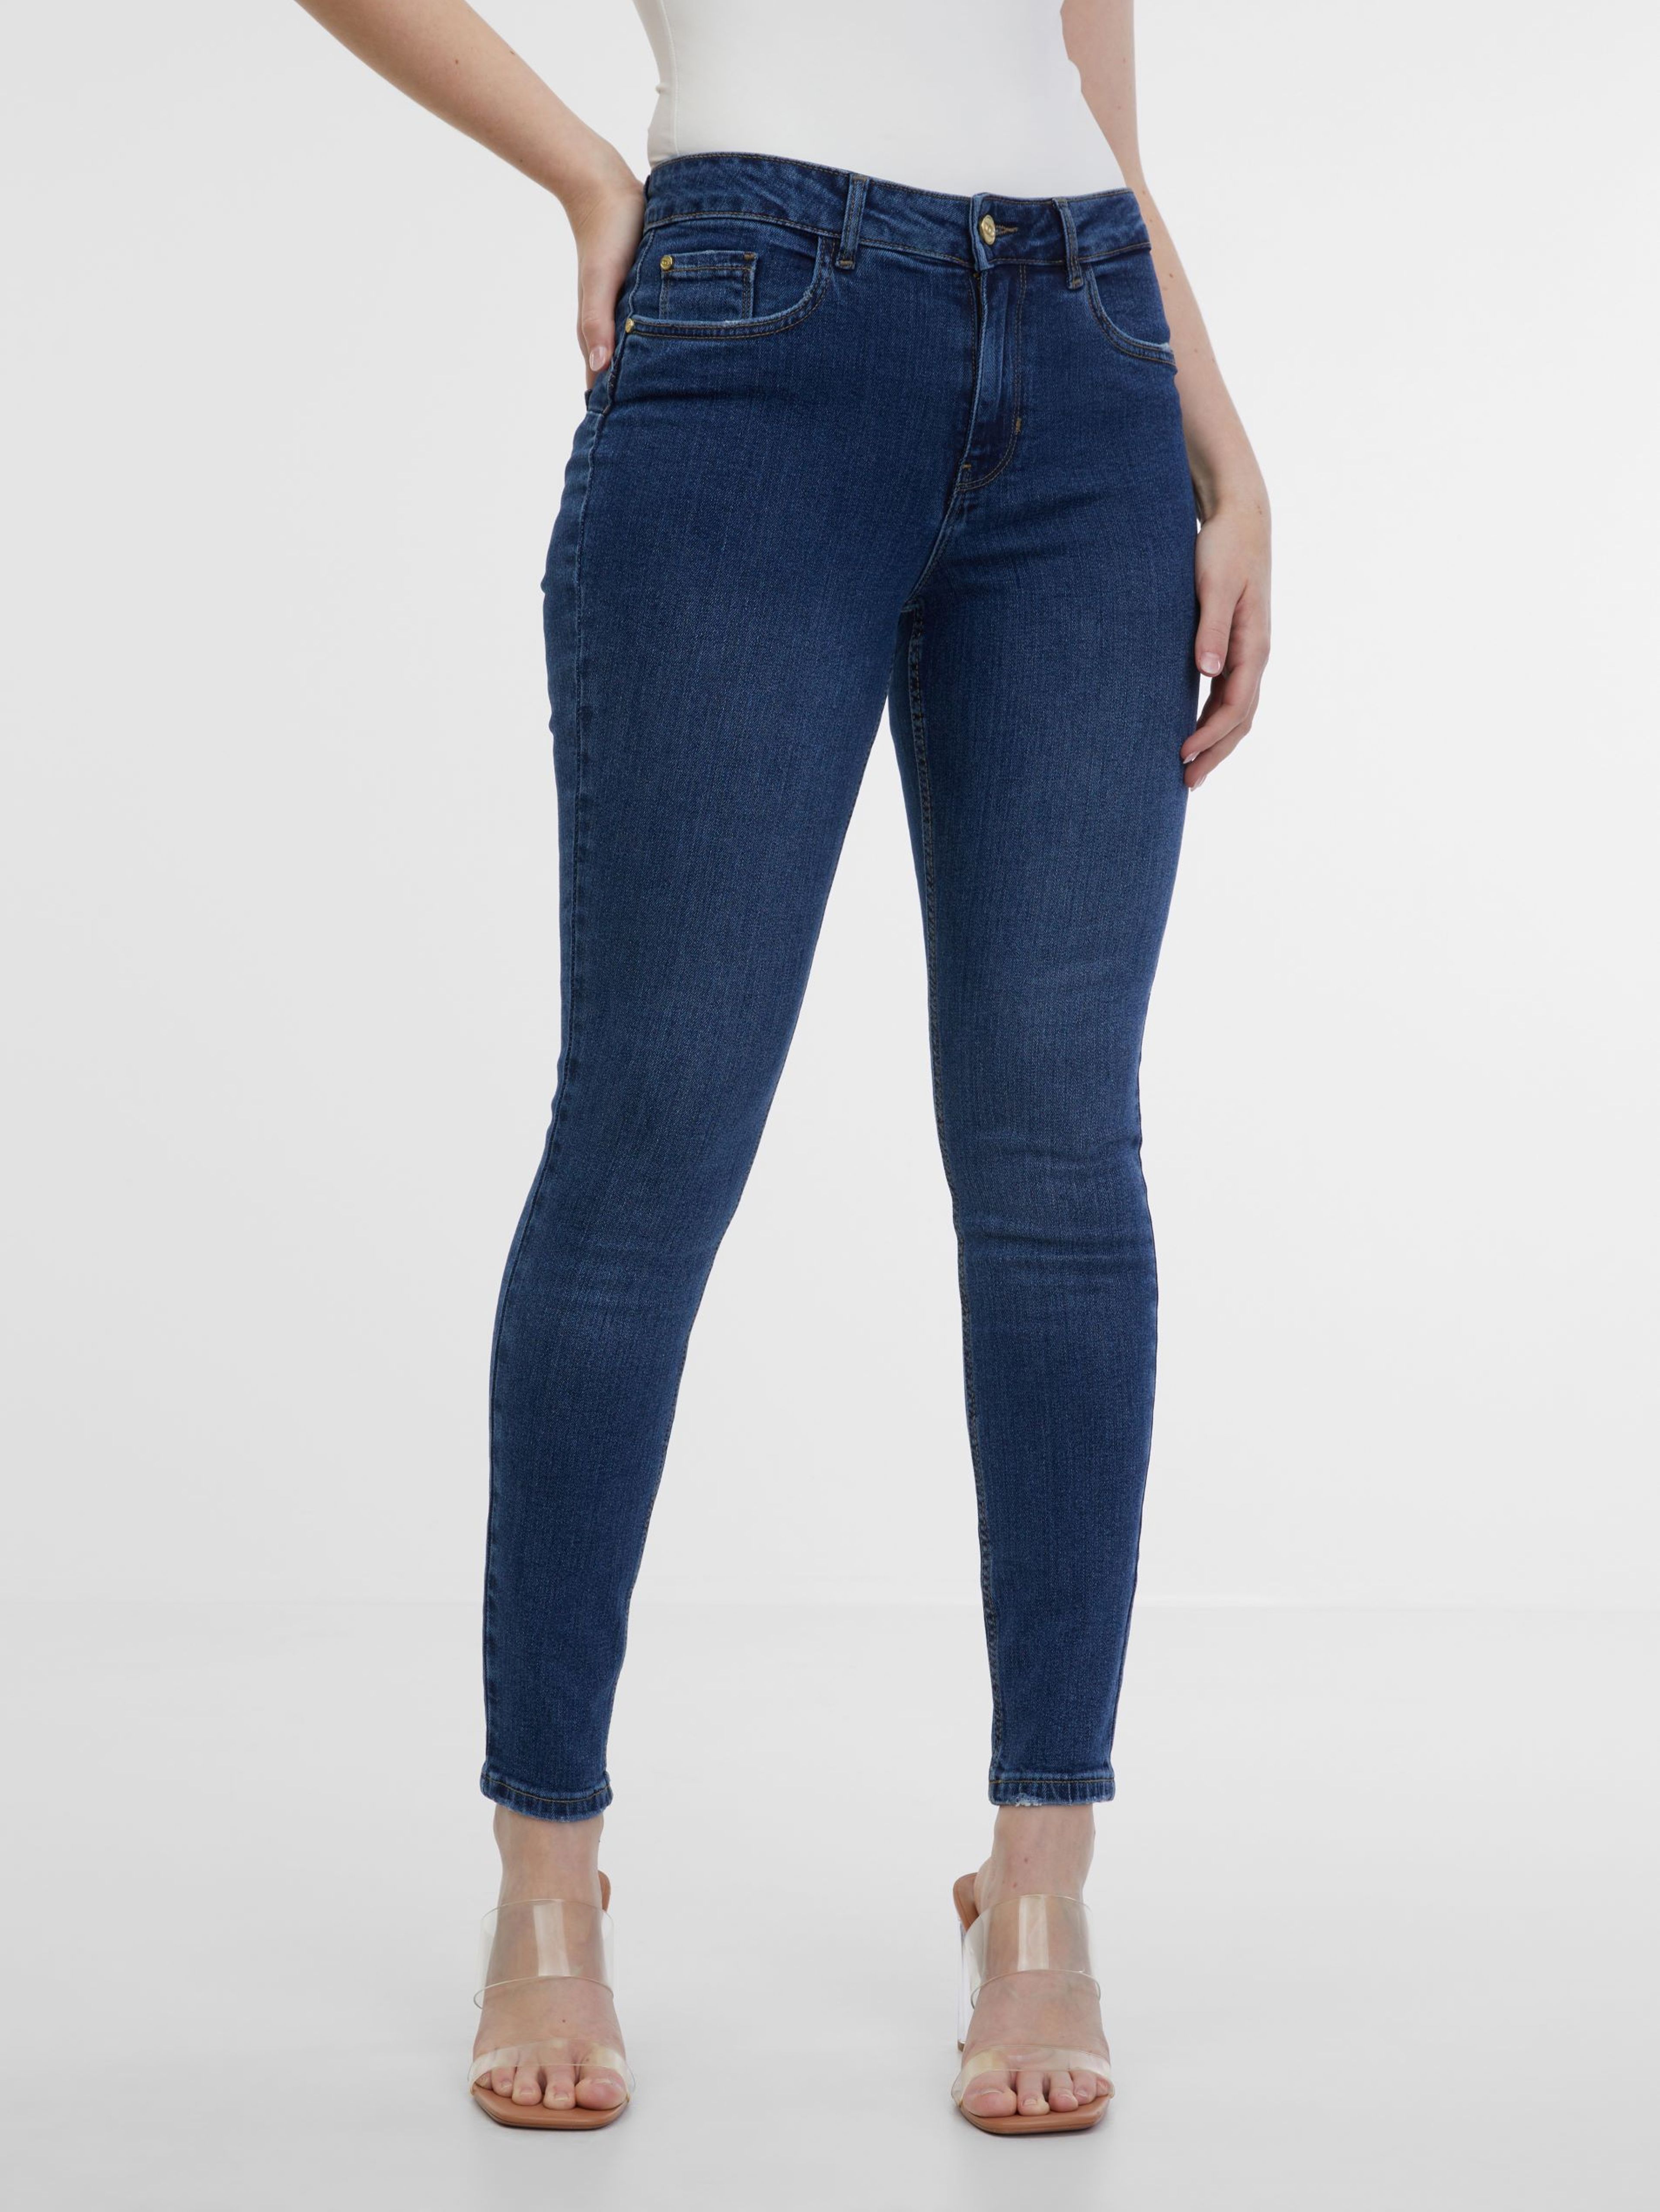 Ciemnoniebieskie jeansy damskie jeggins ORSAY